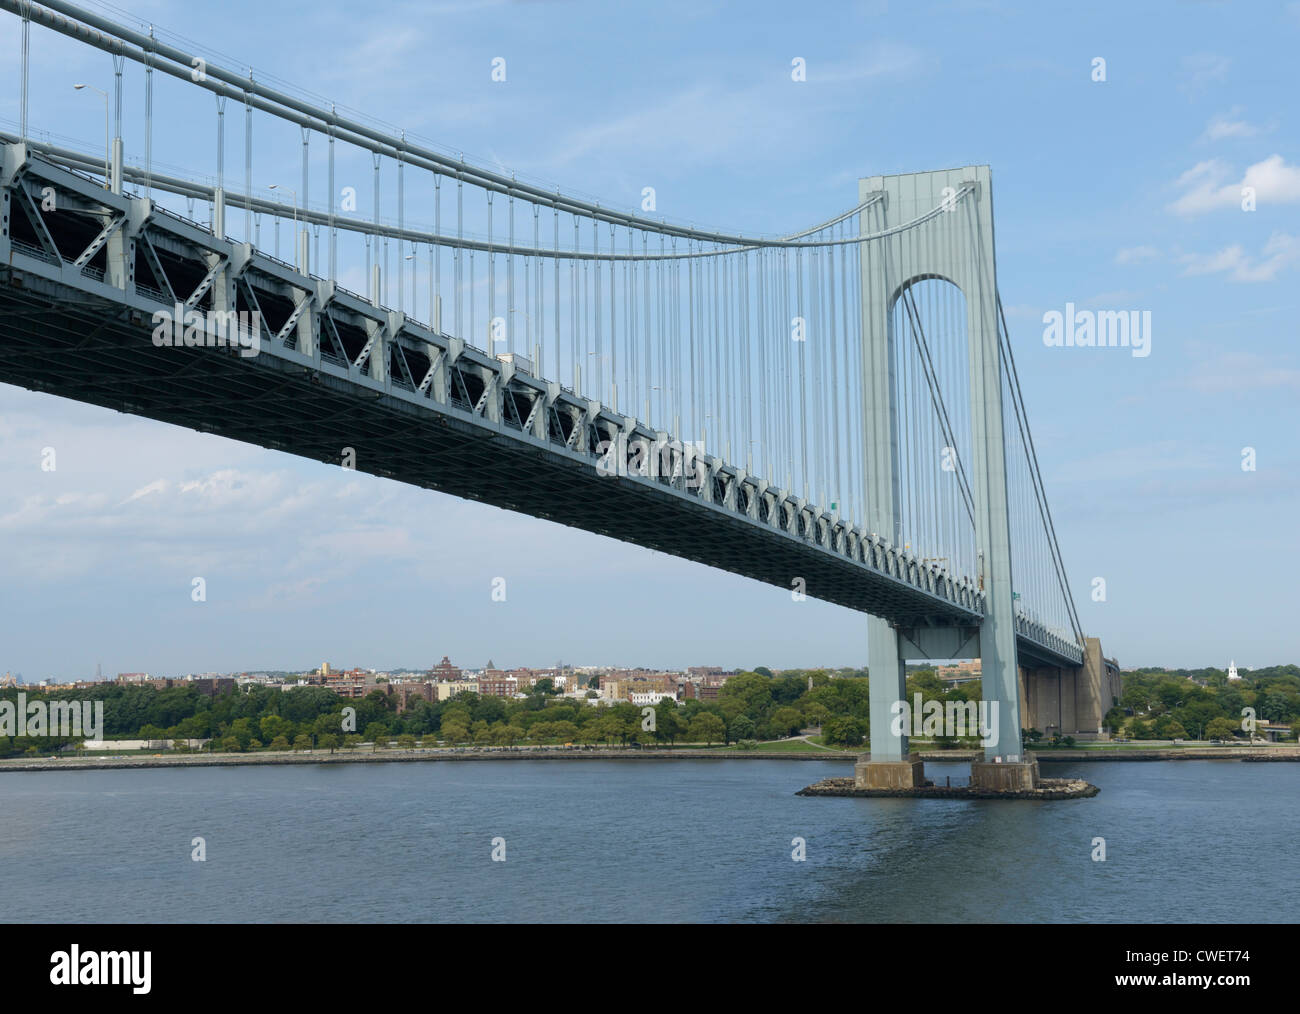 Verrazano-Narrows Bridge, connecting Brooklyn and Staten Island, NY Stock Photo